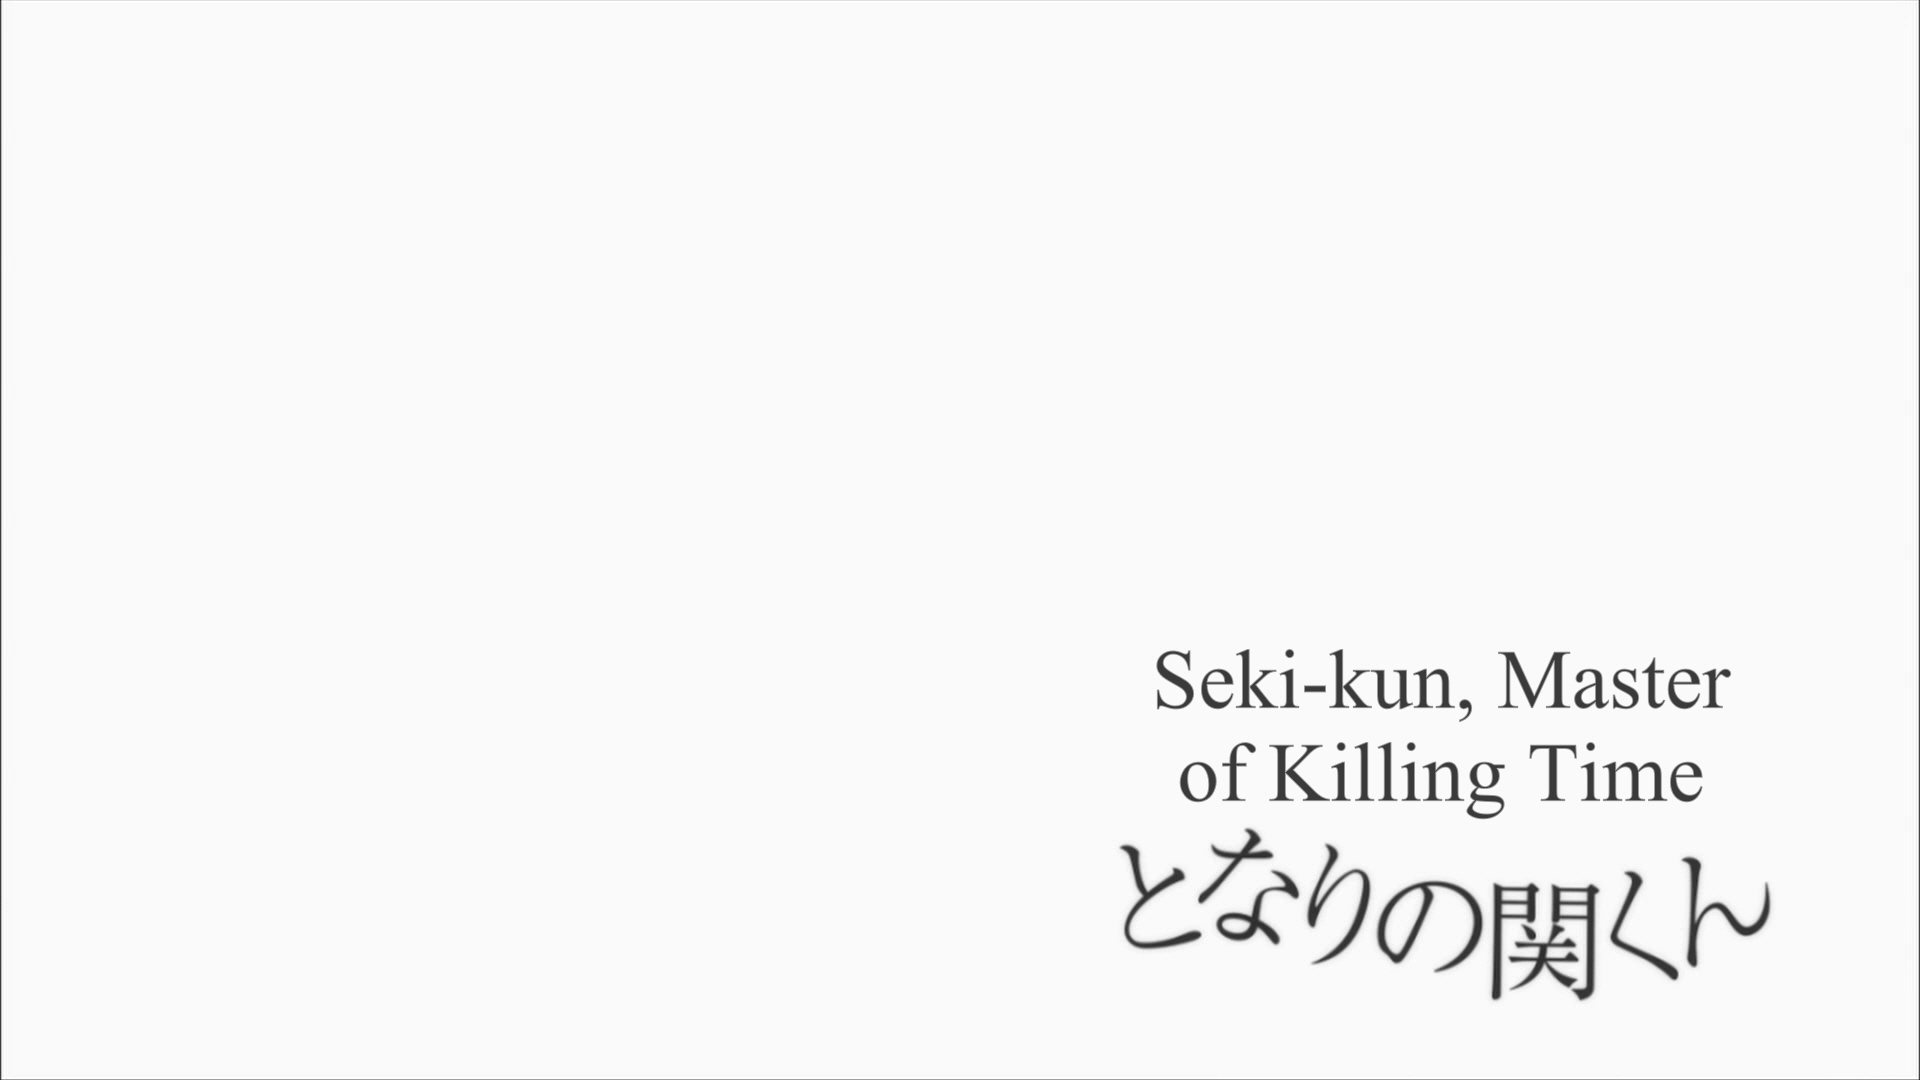 Tonari no Seki-kun The Master of Killing Time Episode 2 17